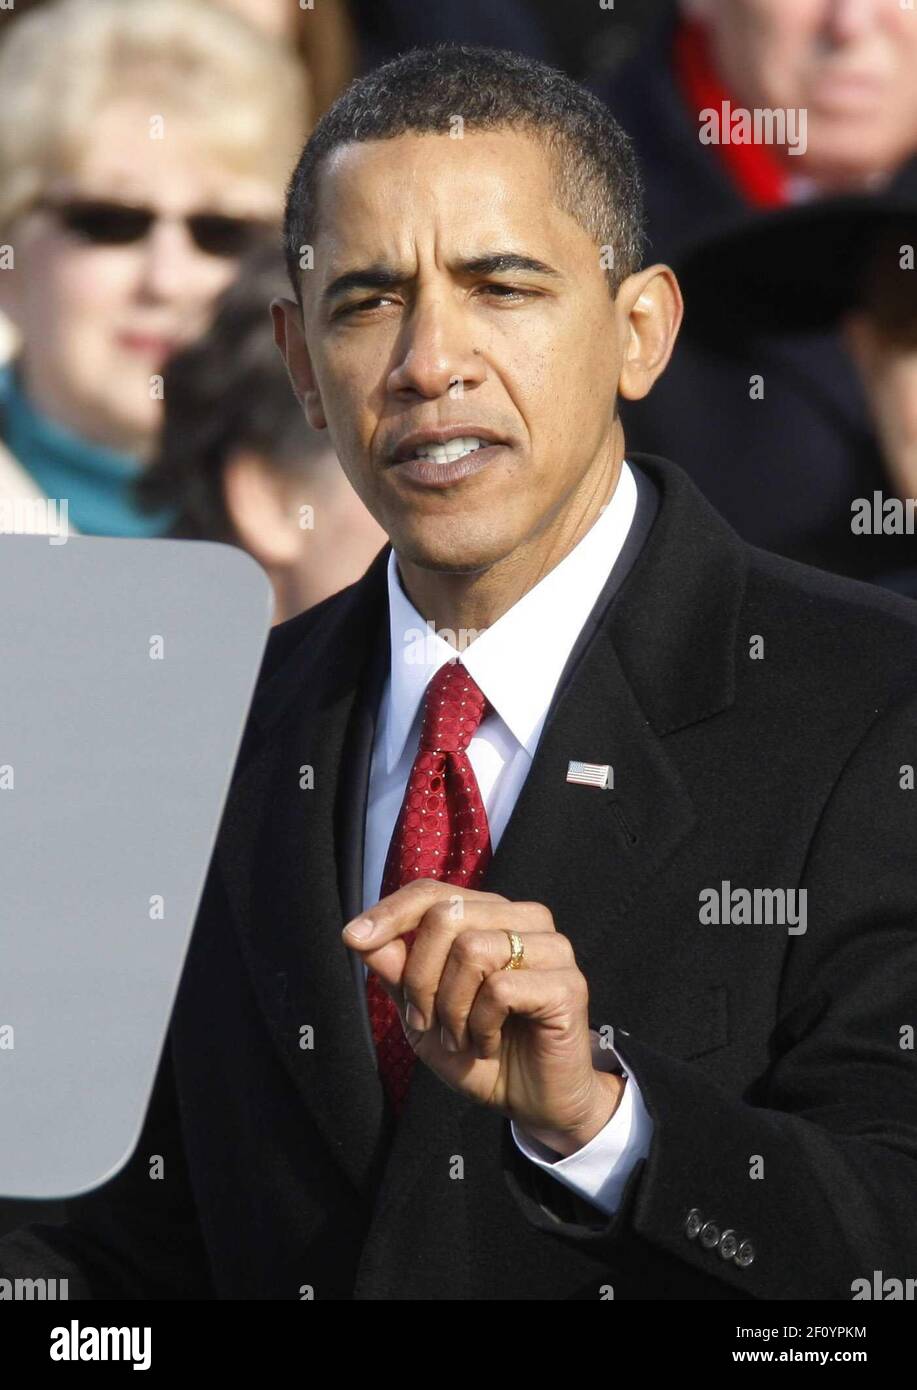 20 janvier 2009 - Washington, DC - le 44e président des États-Unis, Barack Obama, prononce son discours inaugural à Washington, le 20 janvier 2009. Crédit photo: Jim Bourg/Pool/Sipa Press/0901202128 Banque D'Images